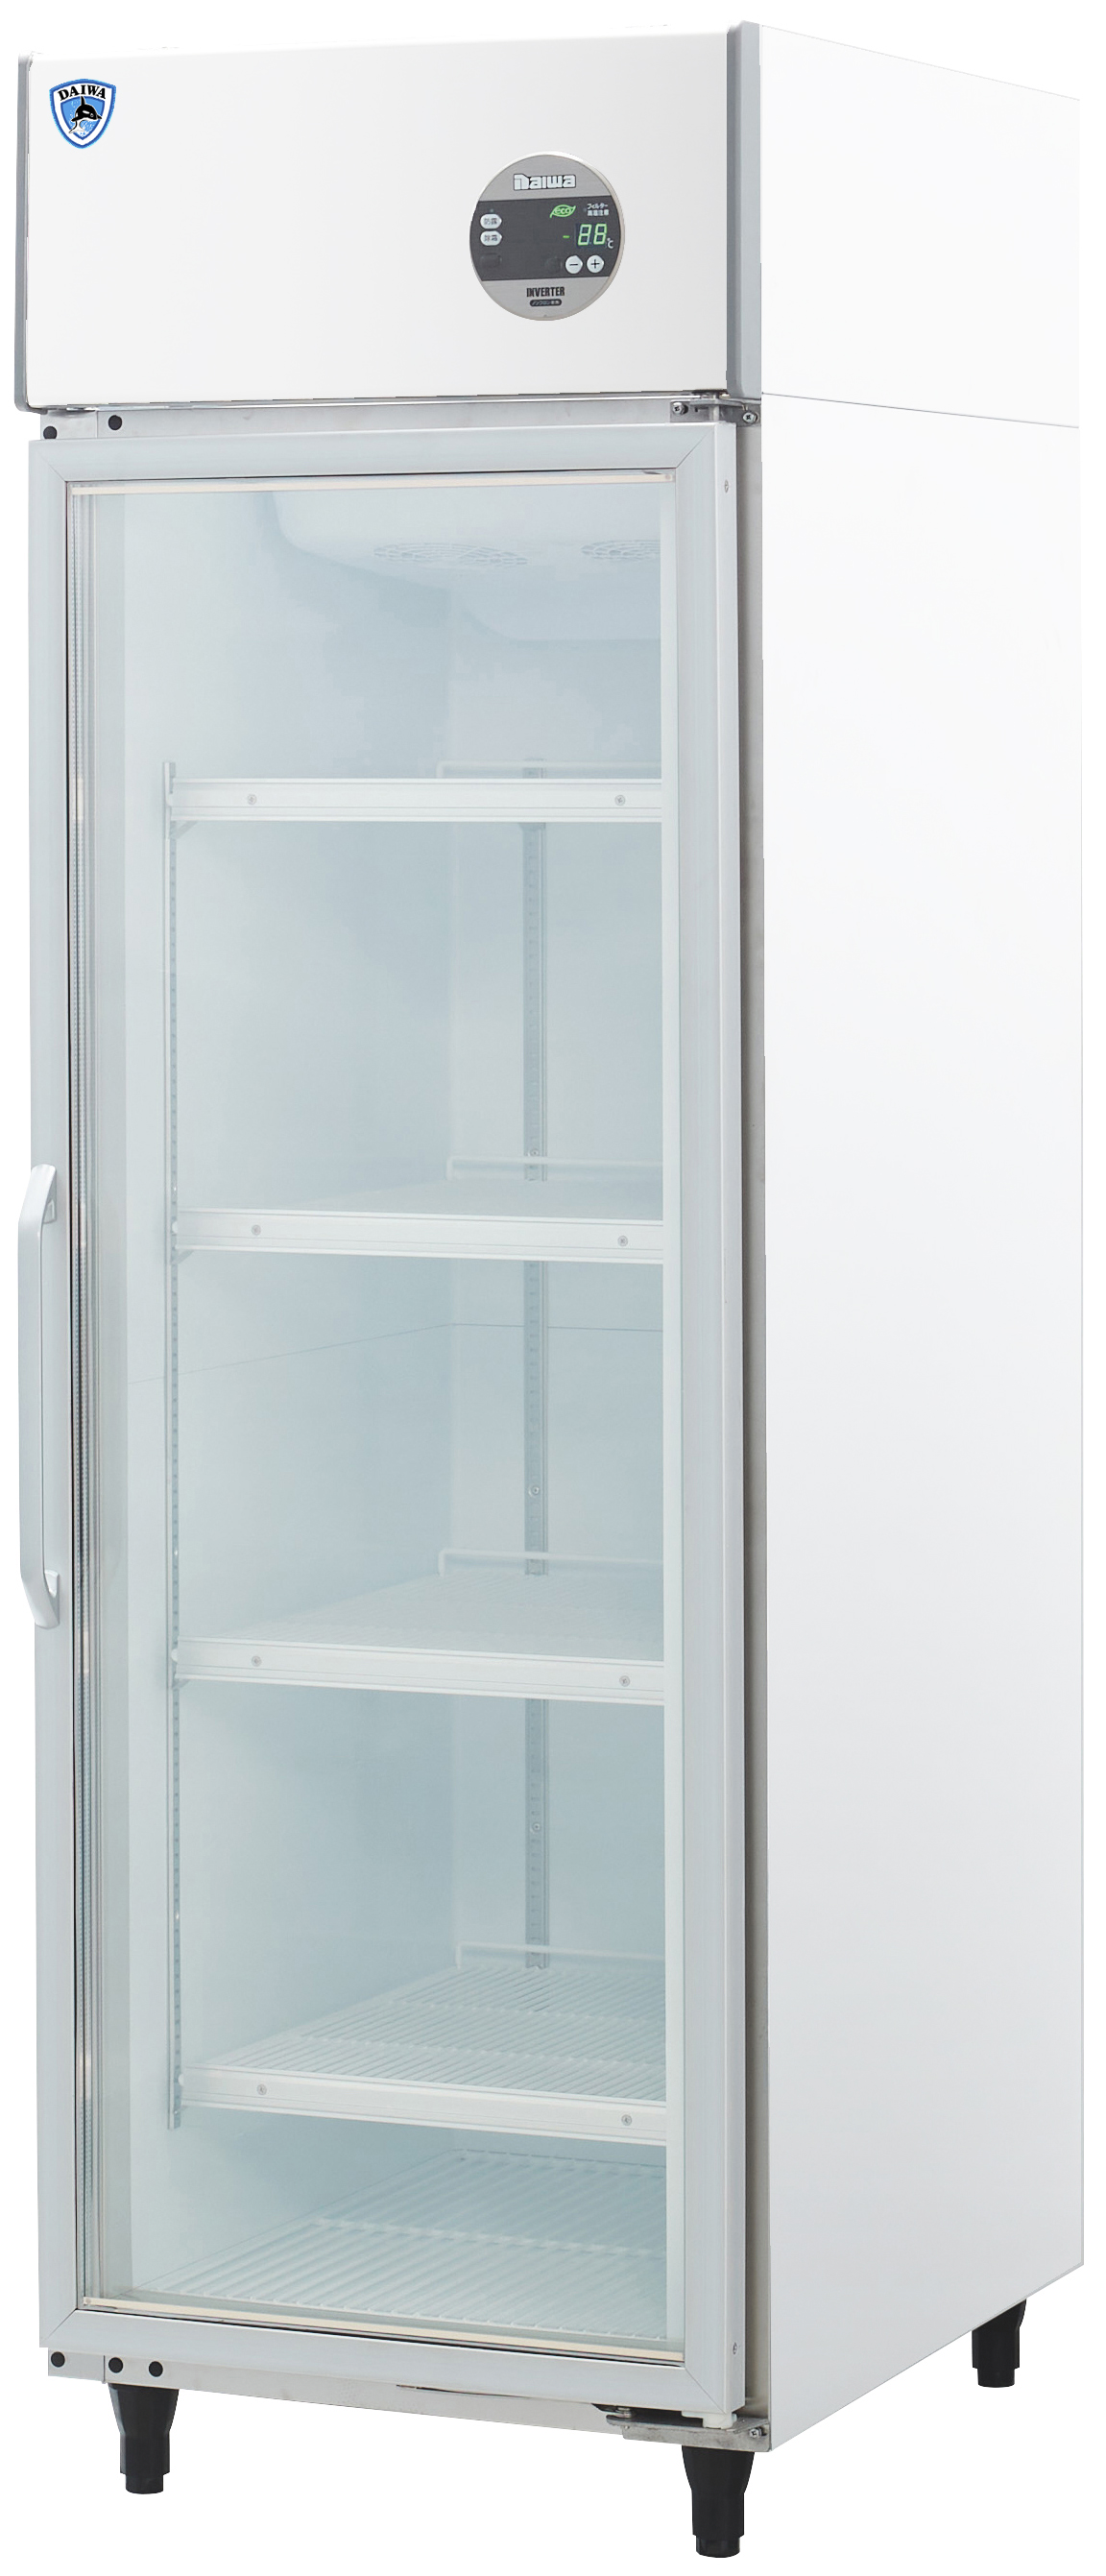 上置型]インバータ制御冷蔵ショーケース エコ蔵くん | 店舗用冷凍